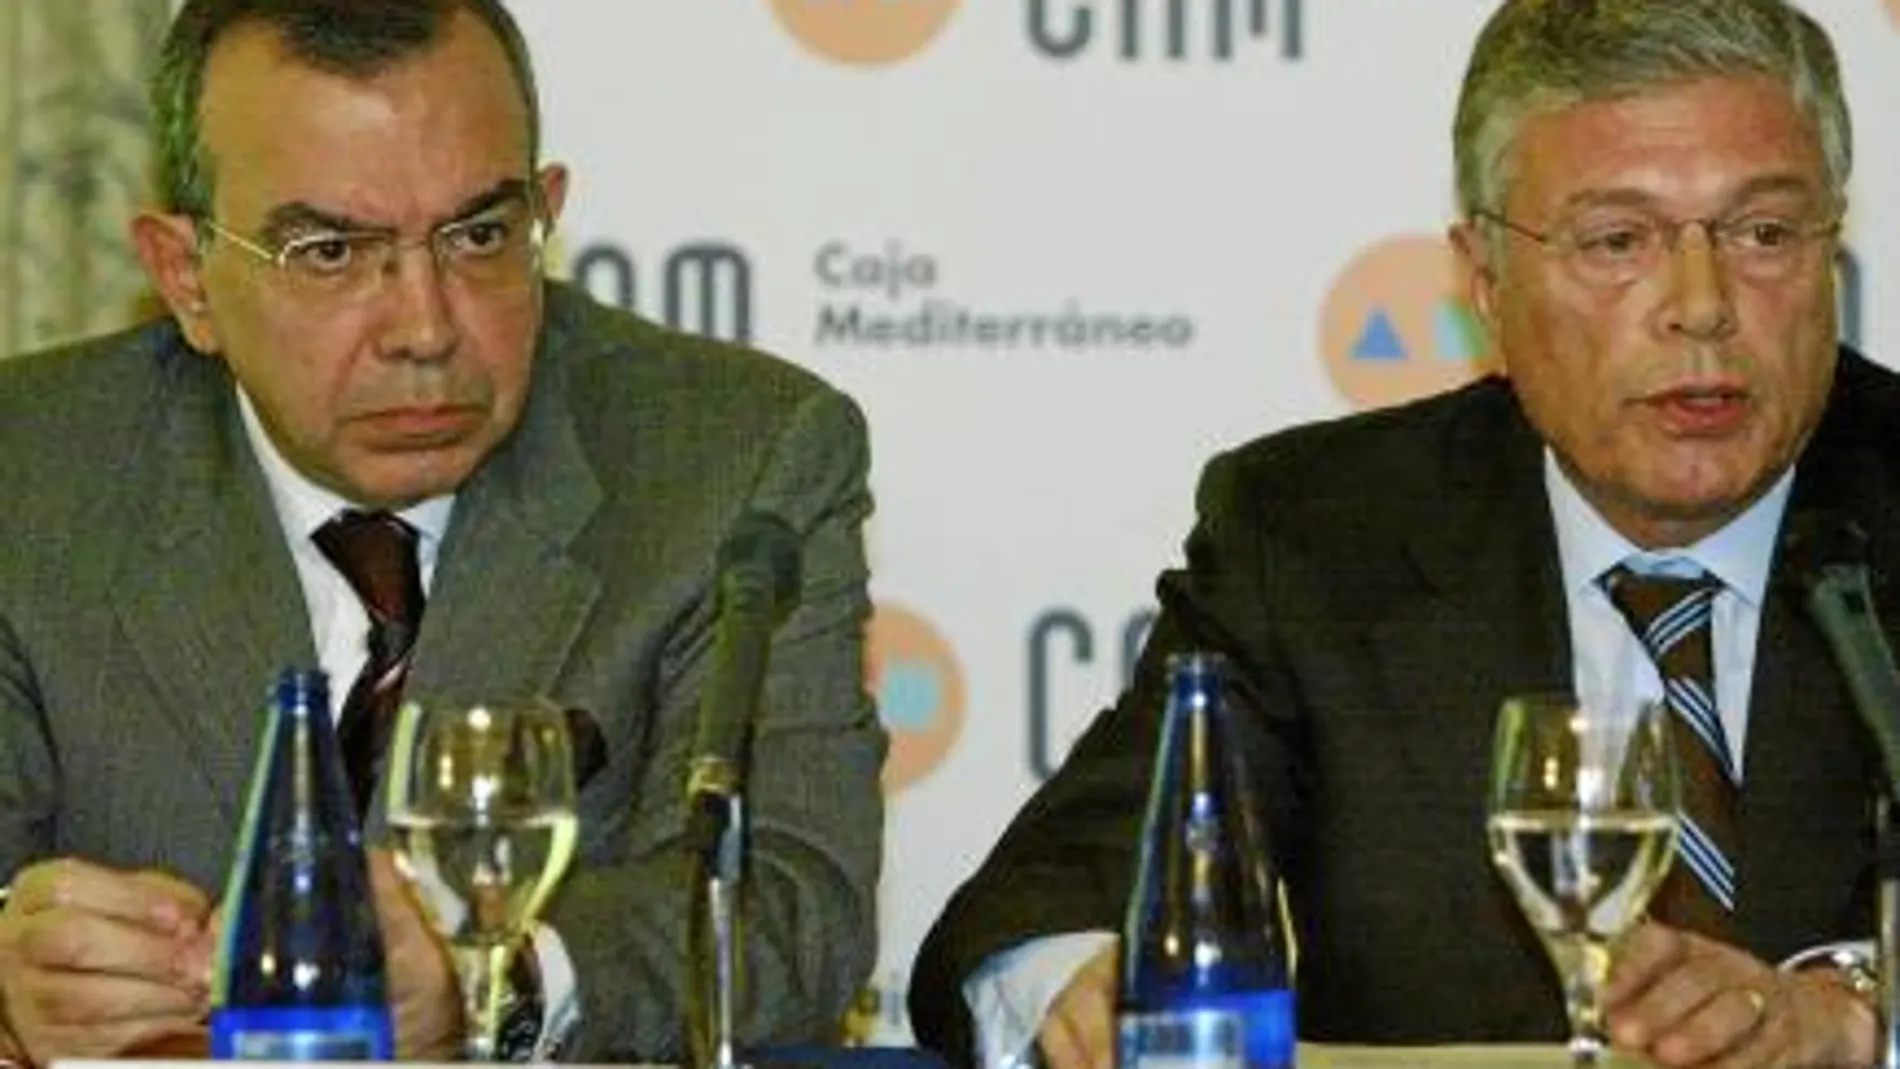 Dcha., el presidente de la entidad alicantina, Modesto Crespo, junto al director de la caja, Roberto López